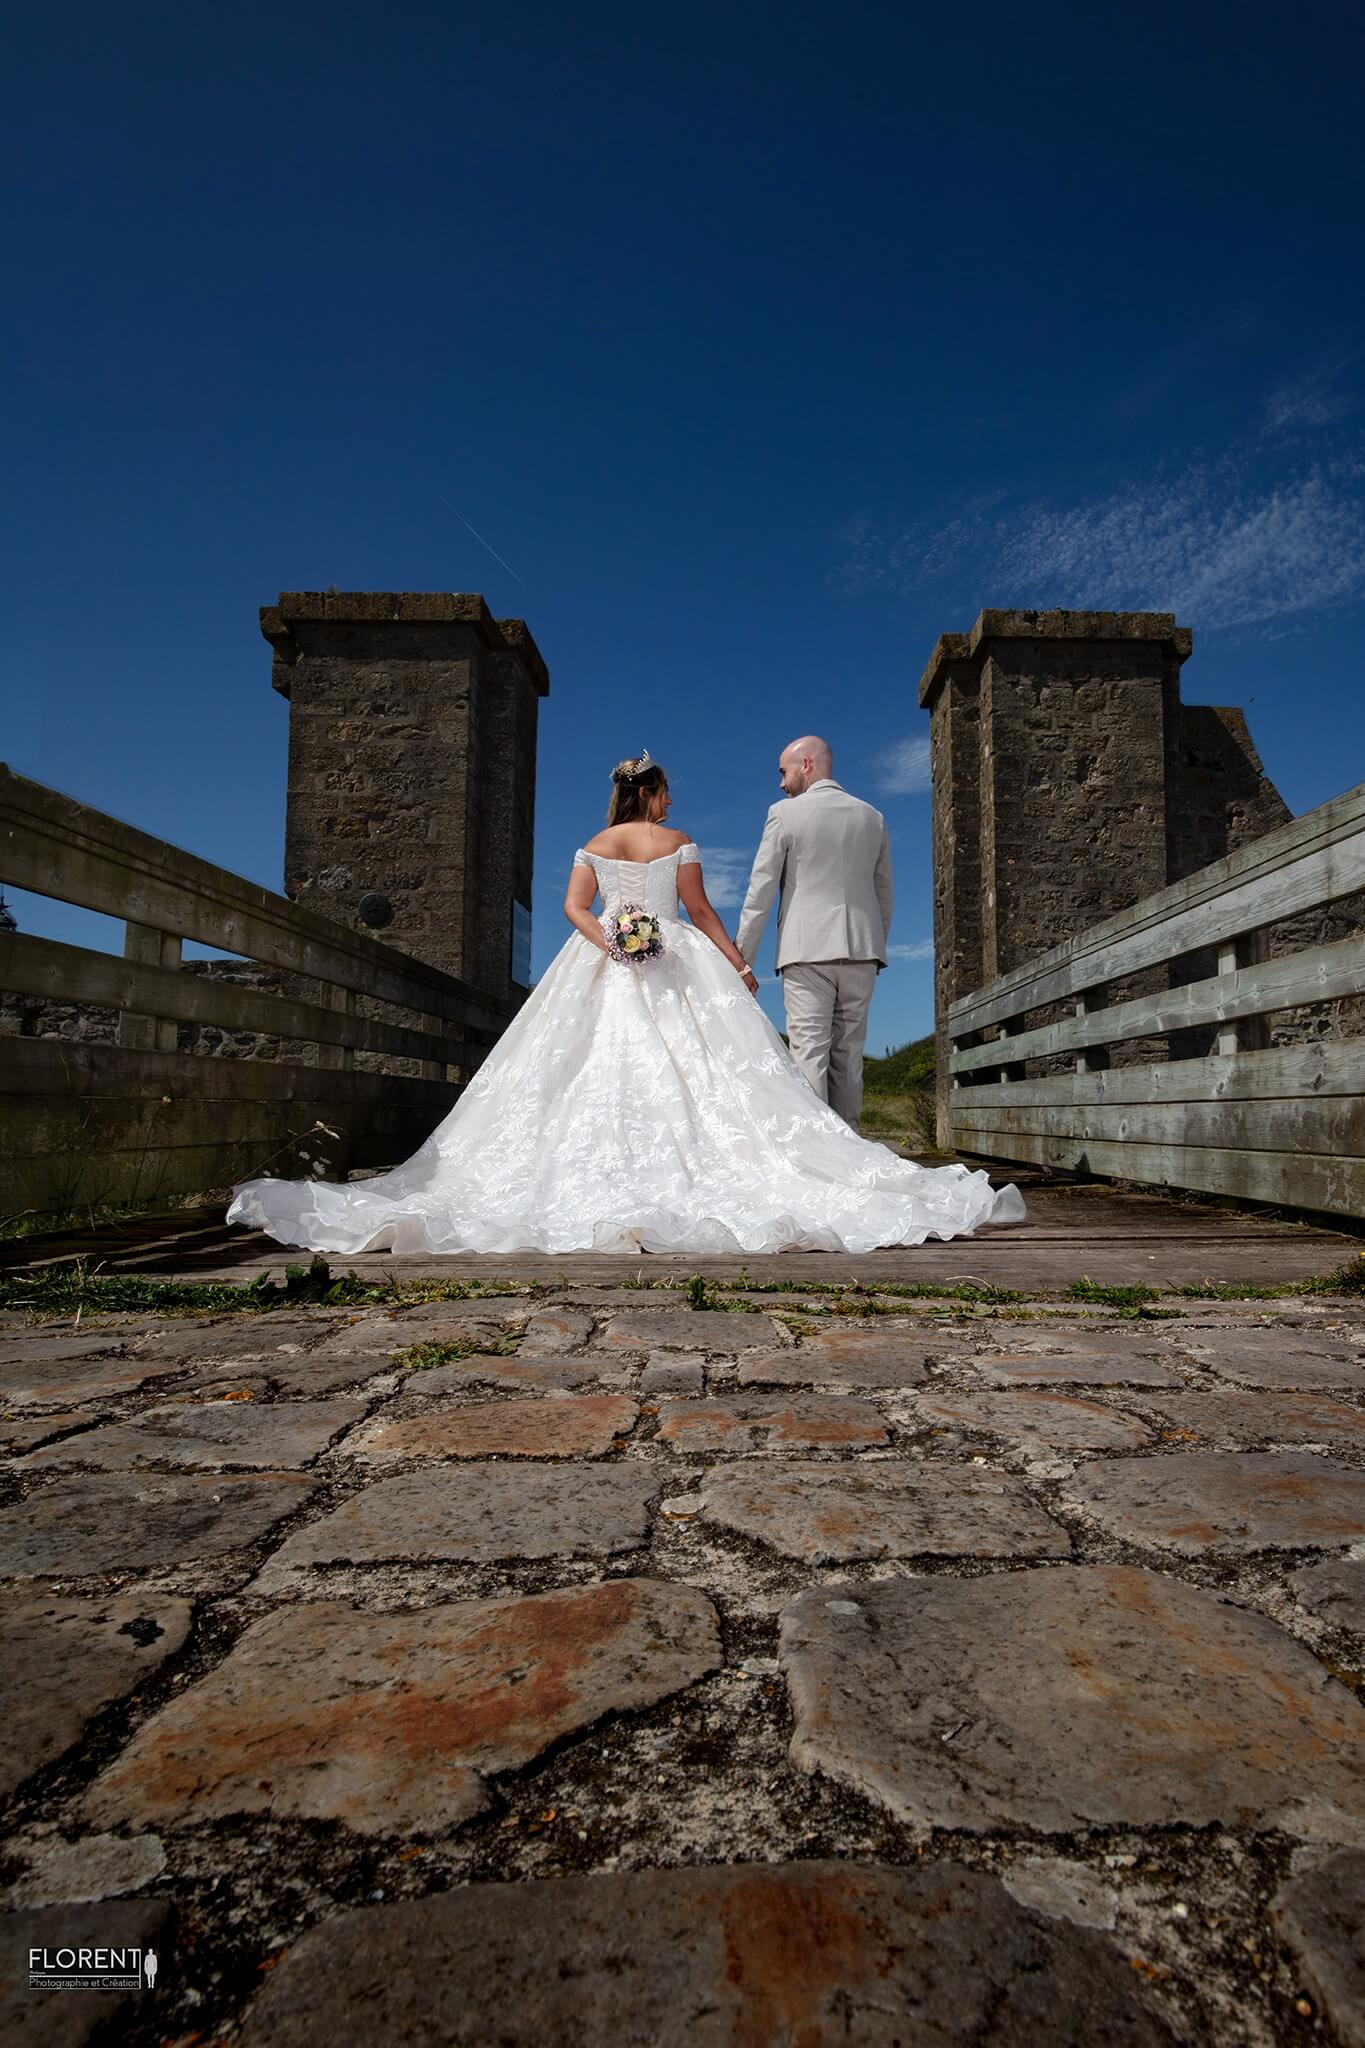 photographe mariage marche main dans la main sur un pont avec bouquet florent studio boulogne sur mer